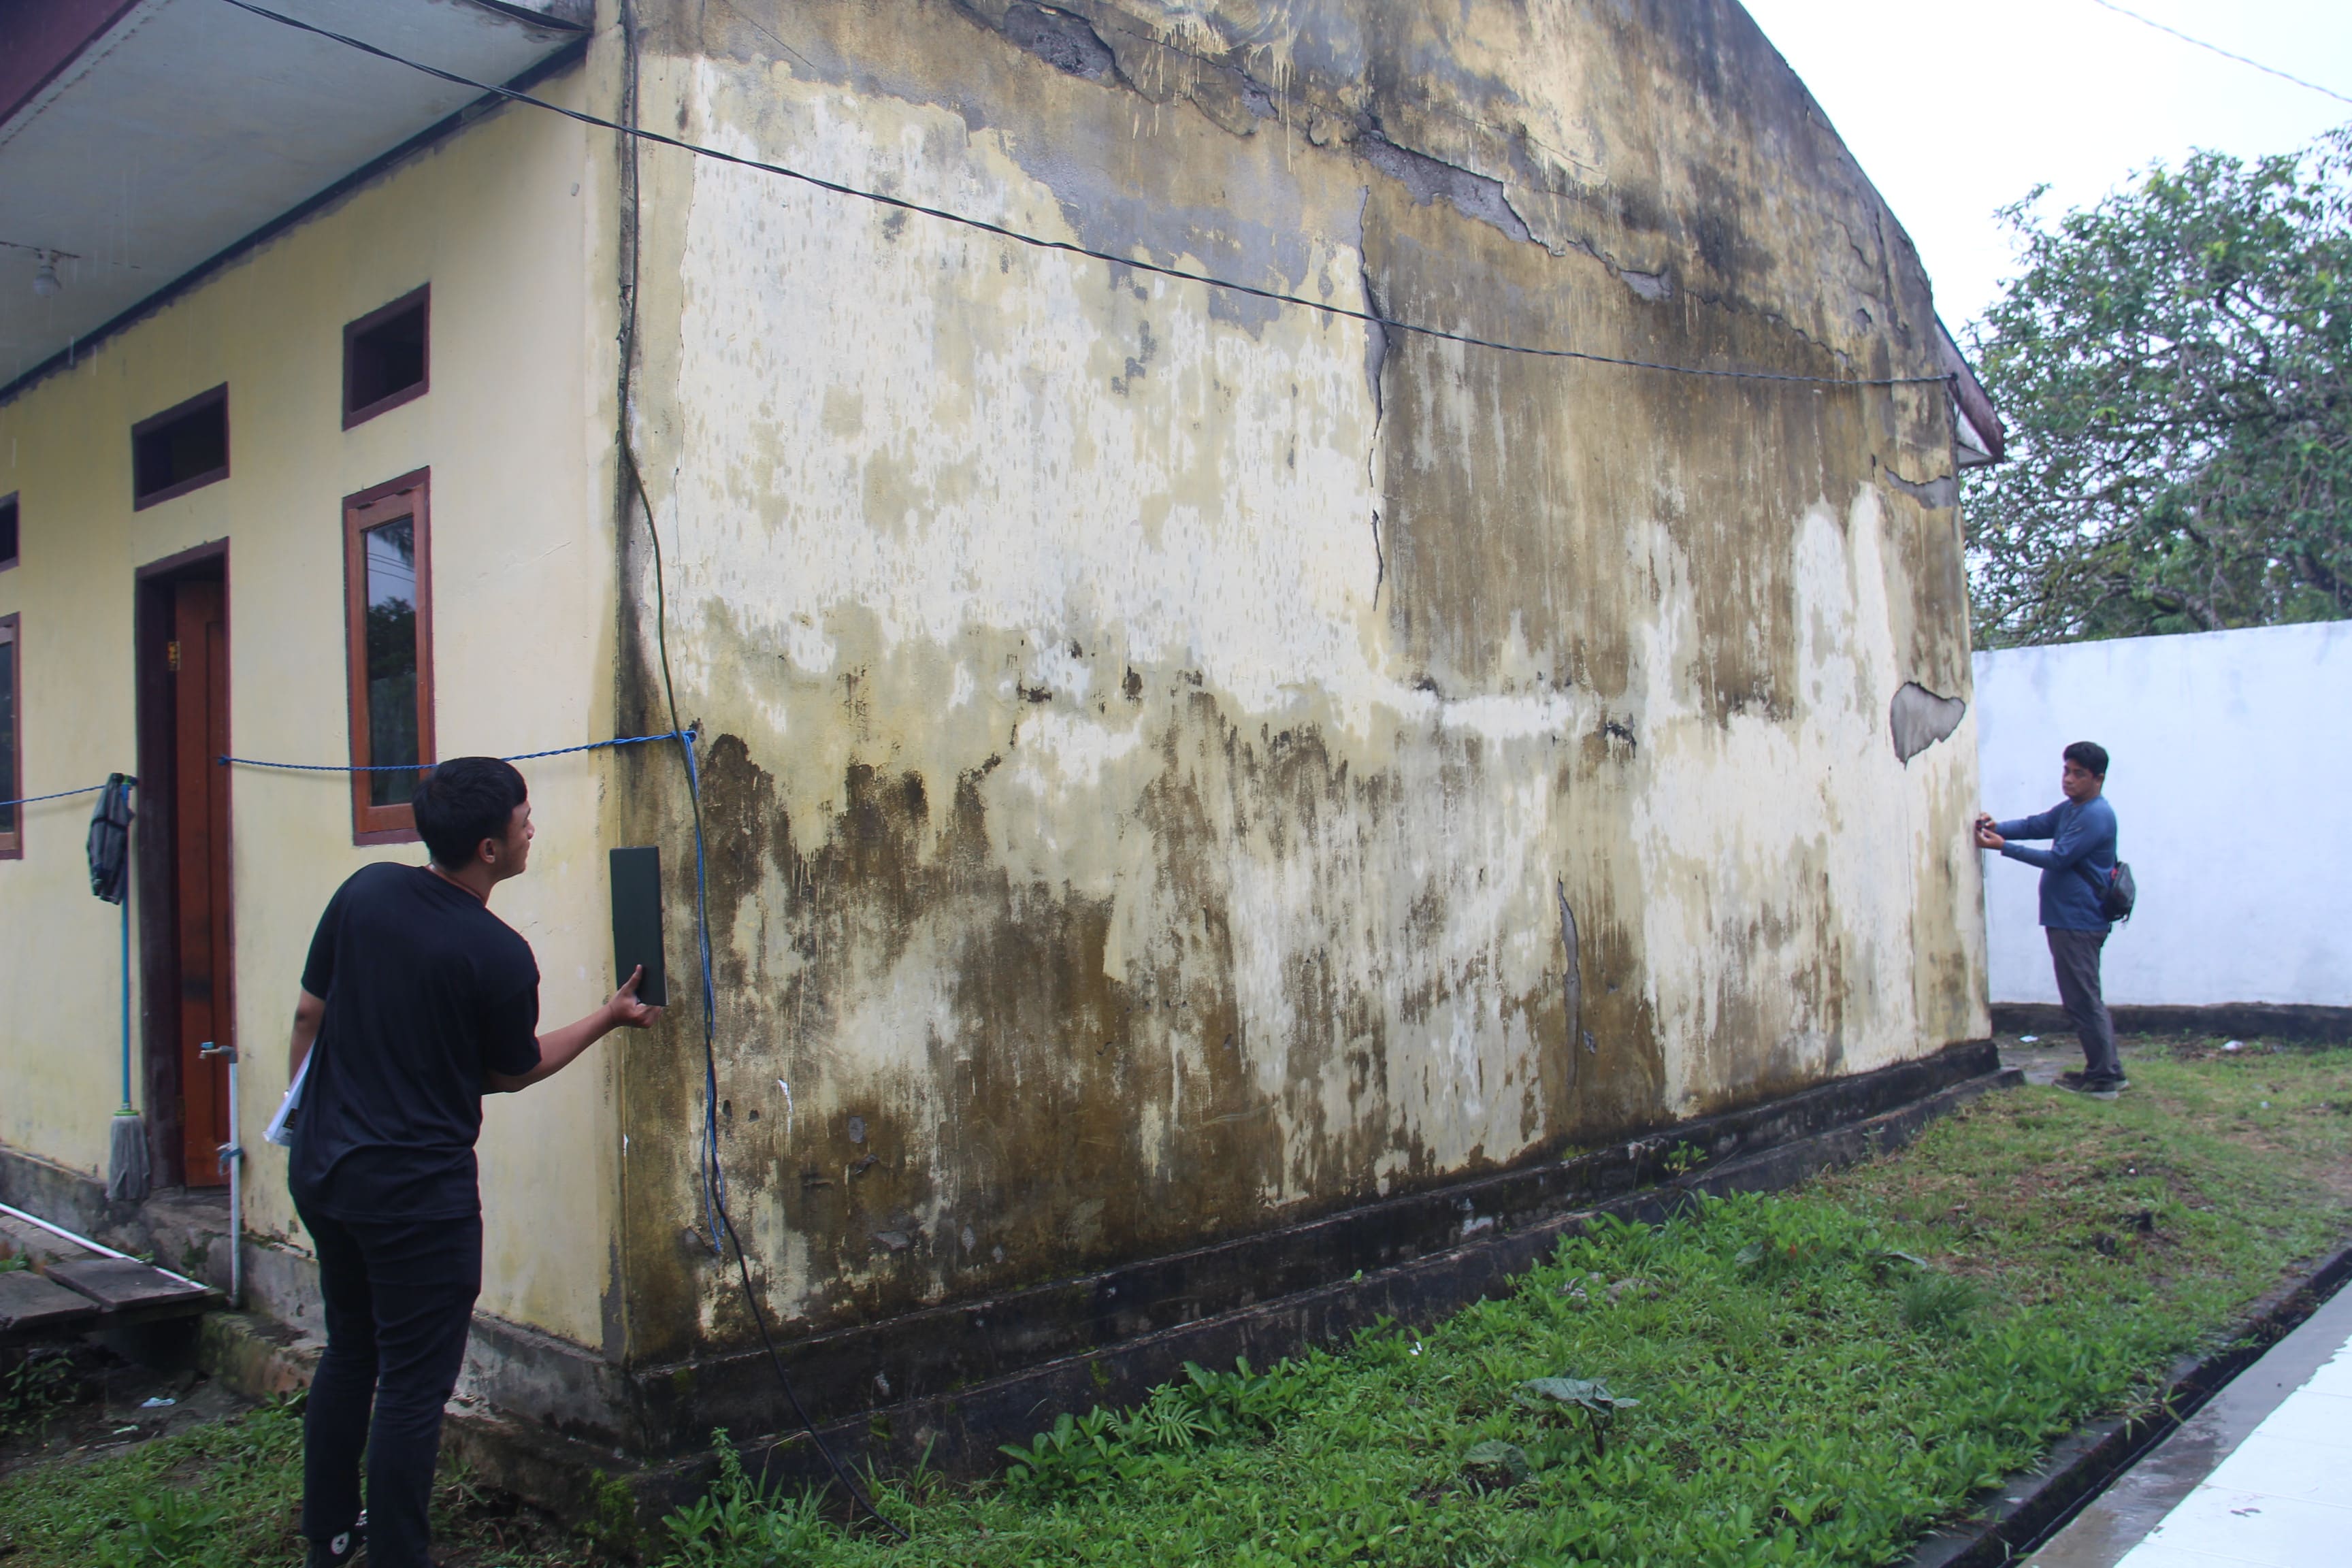 Pemkab Pulau Morotai Ajukan Penilaian BMD untuk Pemindahtangan dan Pemanfaatan